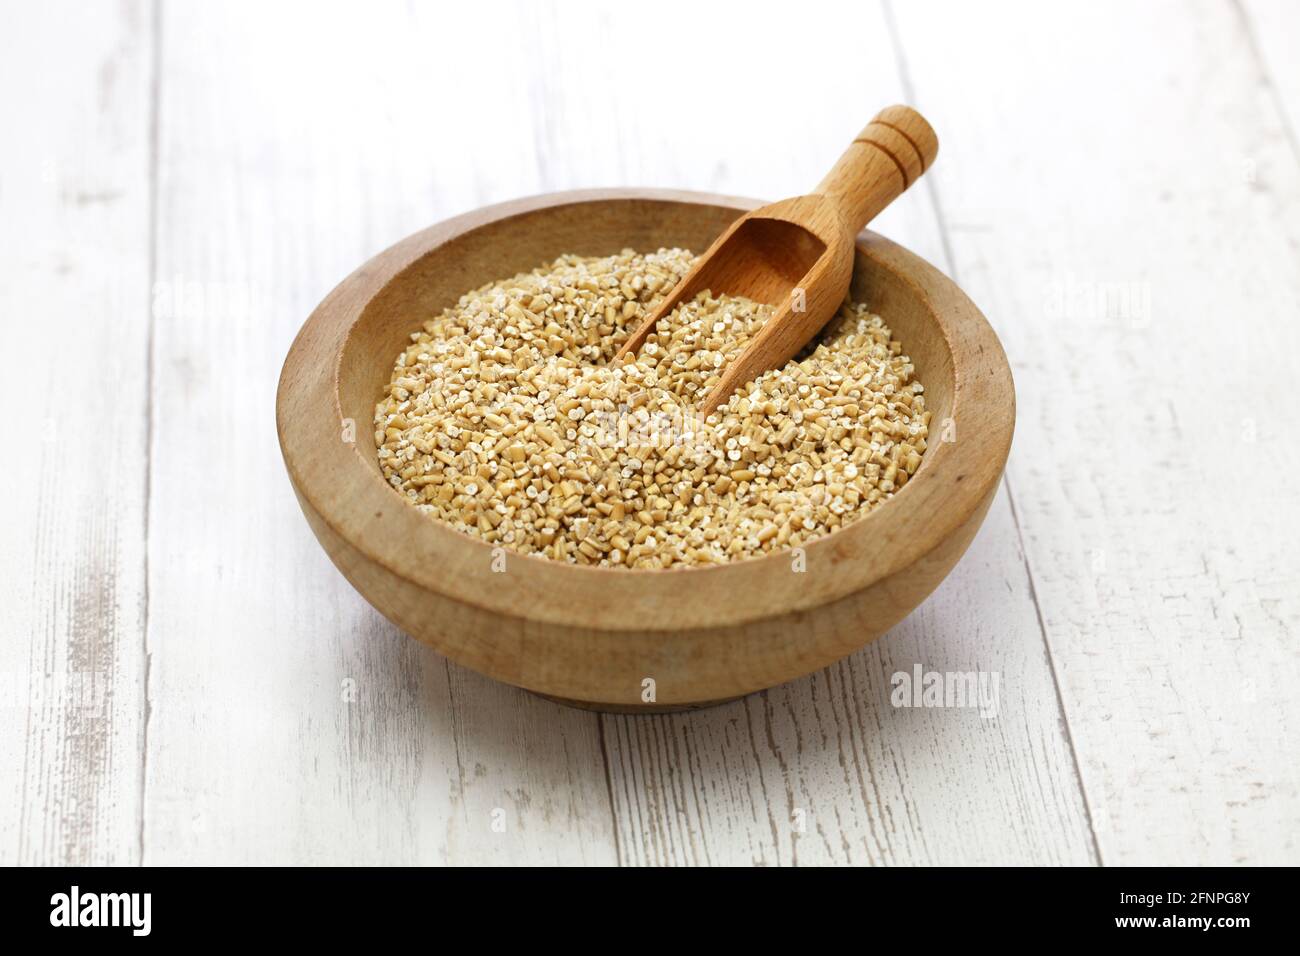 steel cut oats in wooden bowl Stock Photo